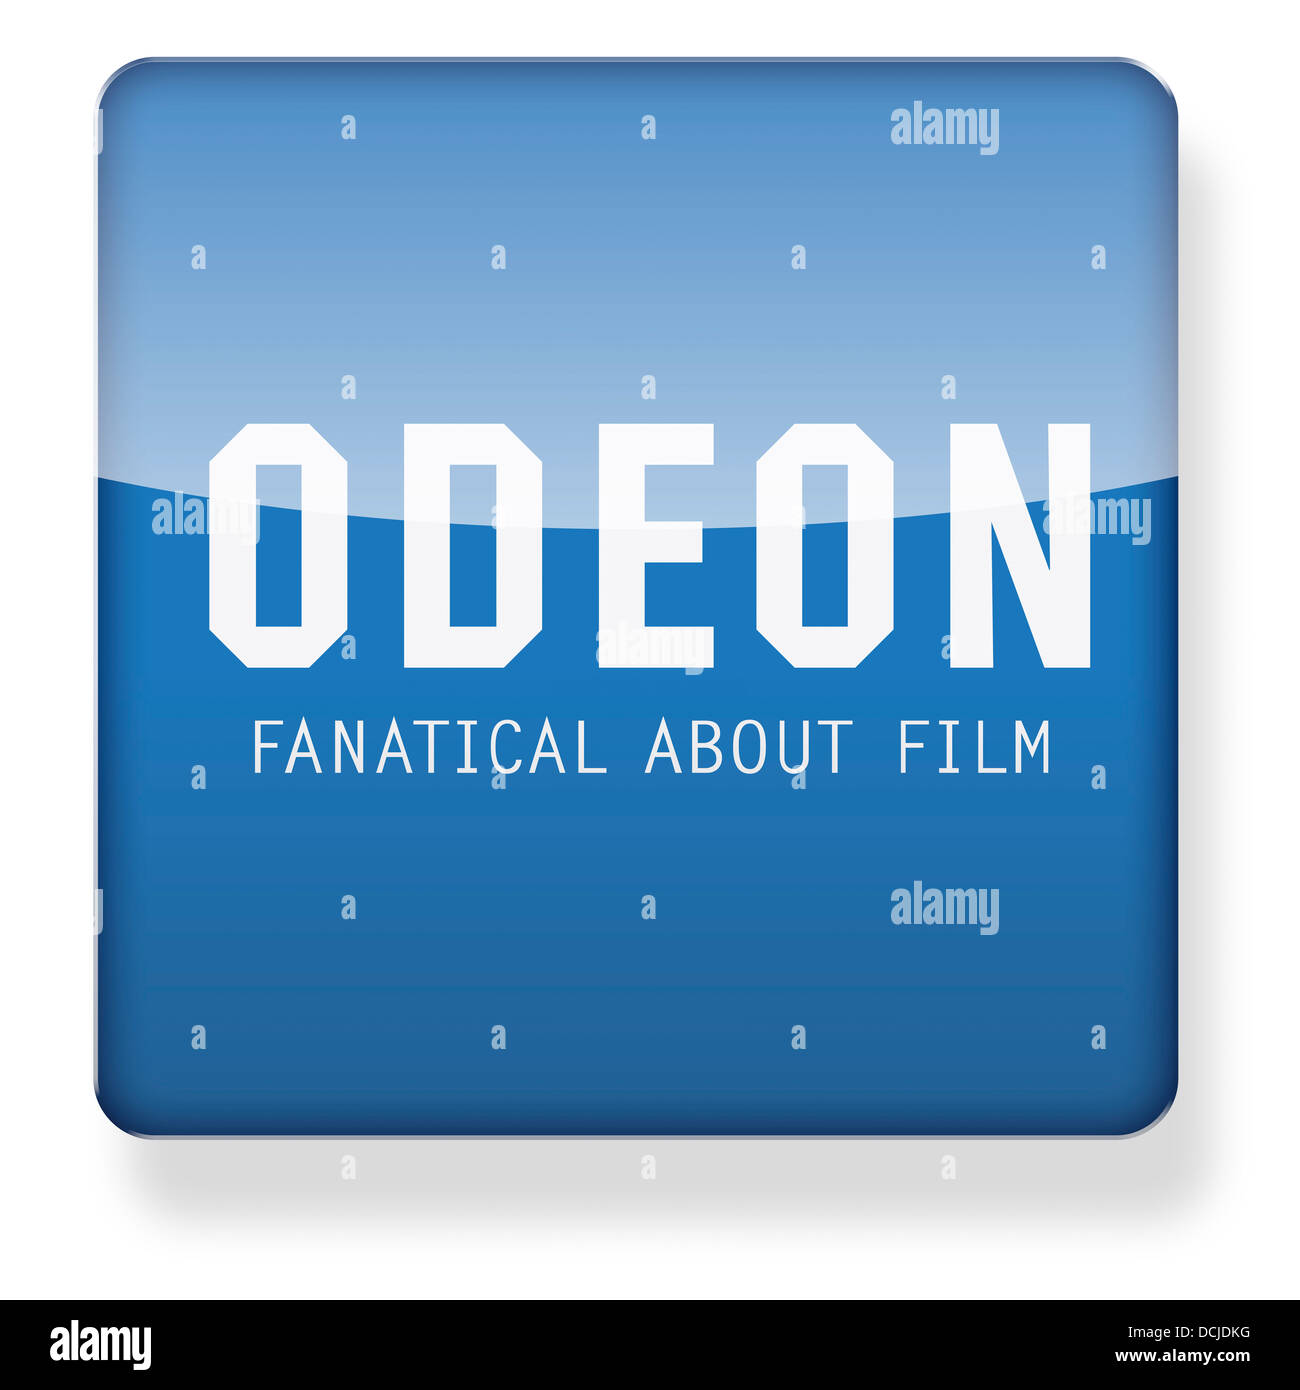 Cinema Odeon logo come l'icona di un'app. Percorso di clipping incluso. Foto Stock